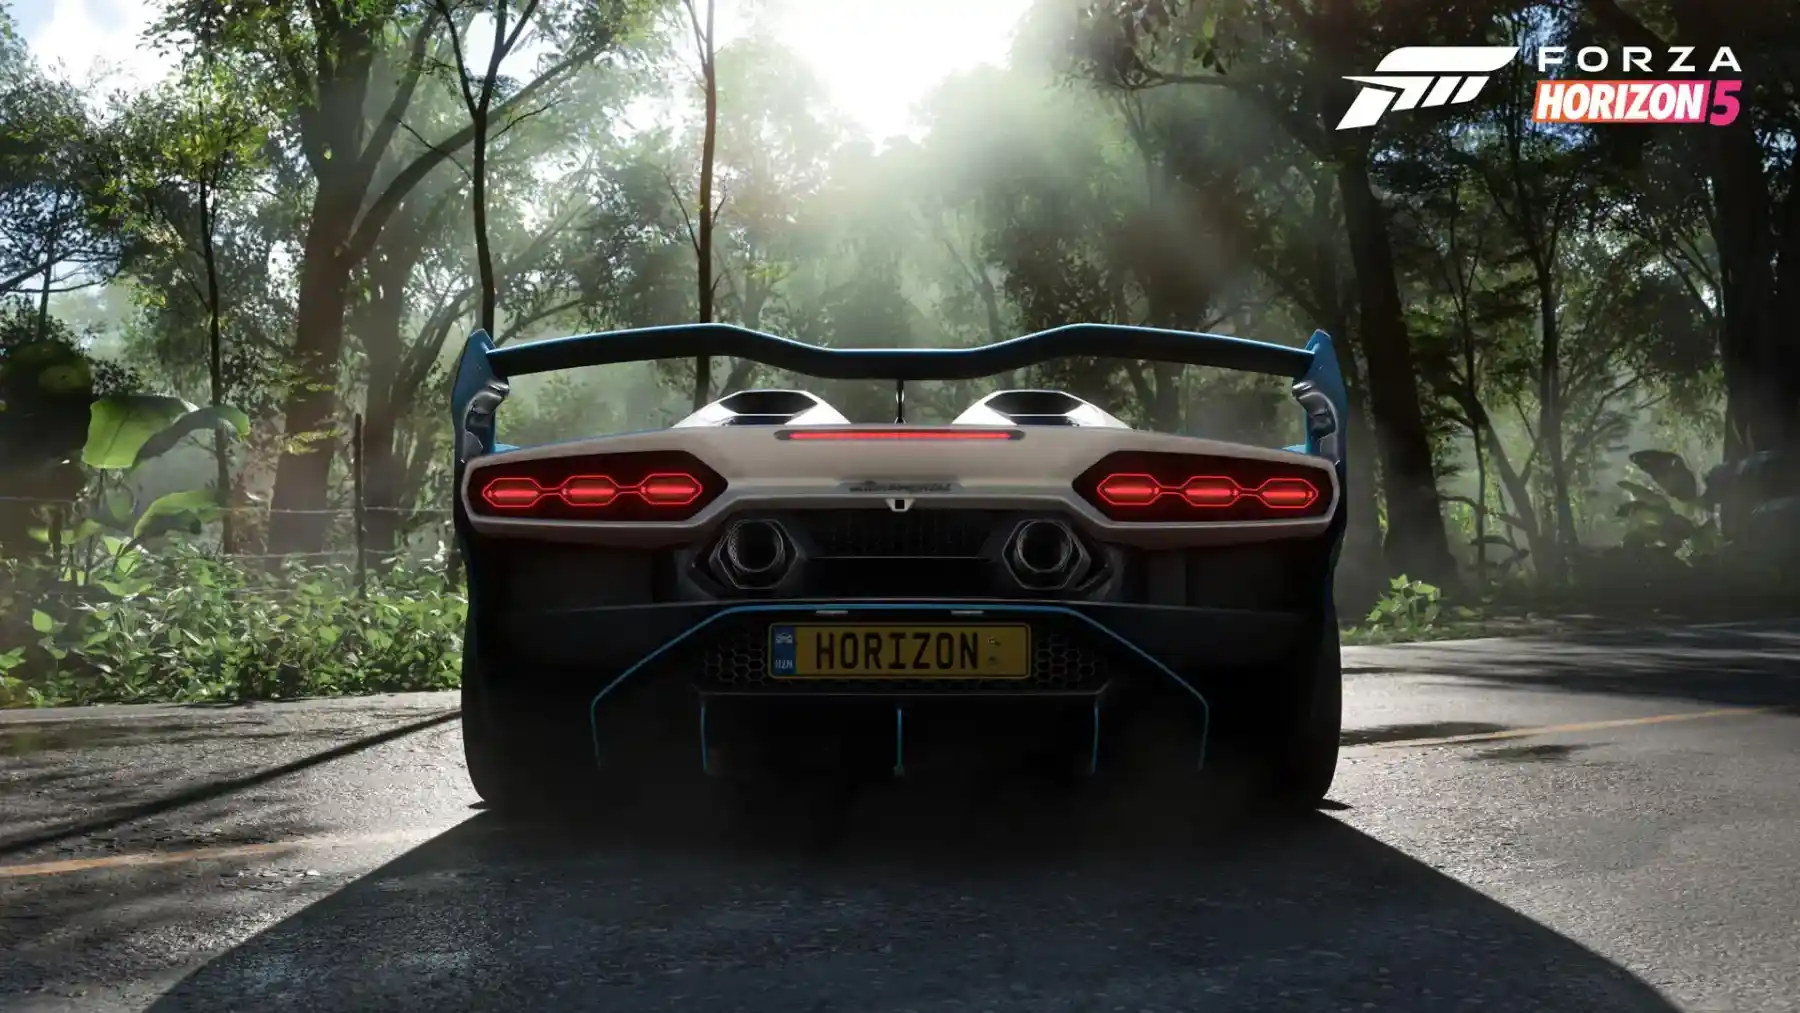 L'Italian Automotive di Forza Horizon 5 aggiunge il pacchetto auto più grande finora